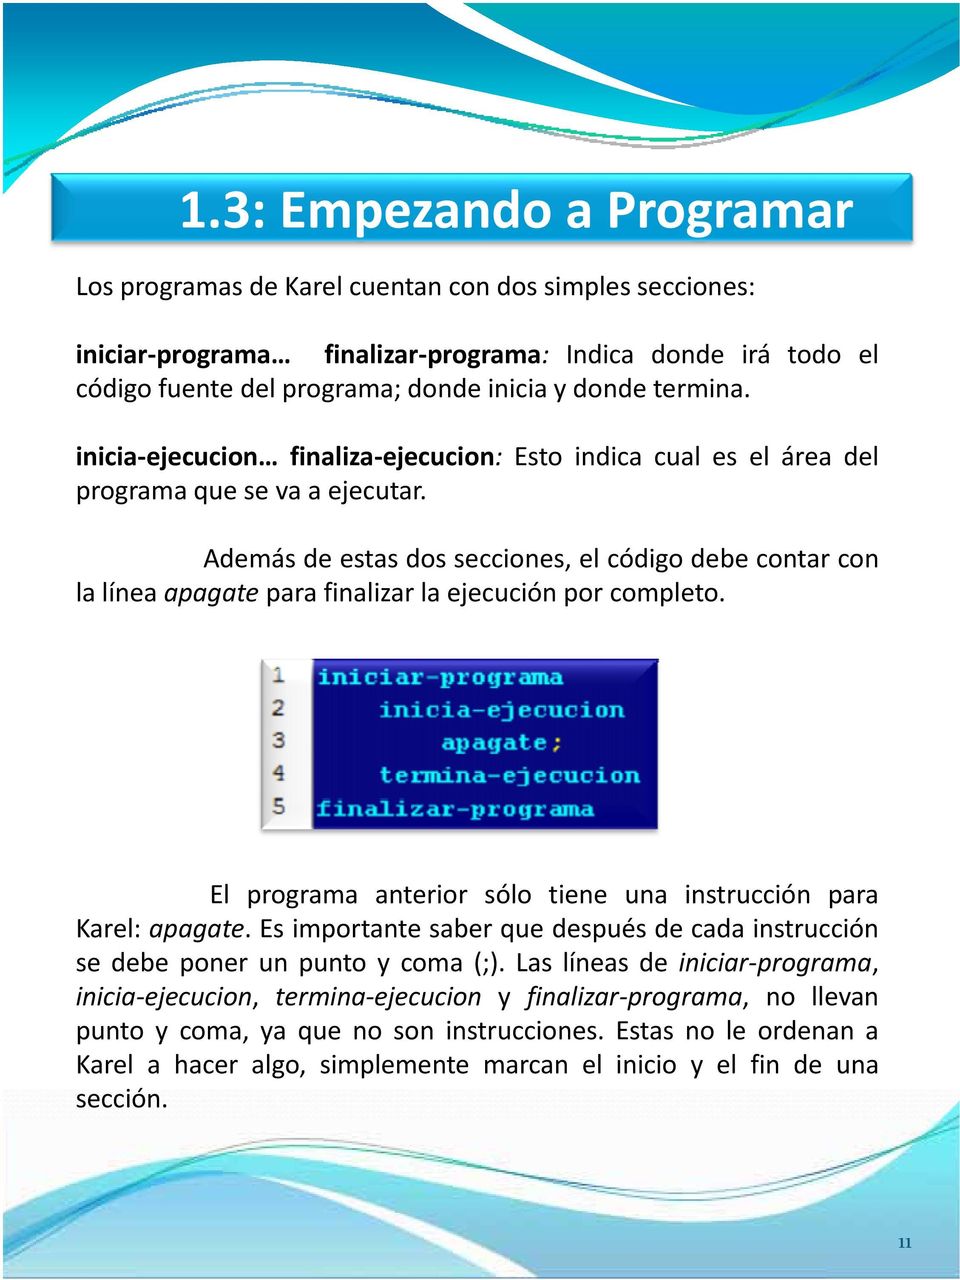 Además de estas dos secciones, el código debe contar con la línea apagate para finalizar la ejecución por completo. El programa anterior sólo tiene una instrucción para Karel: apagate.